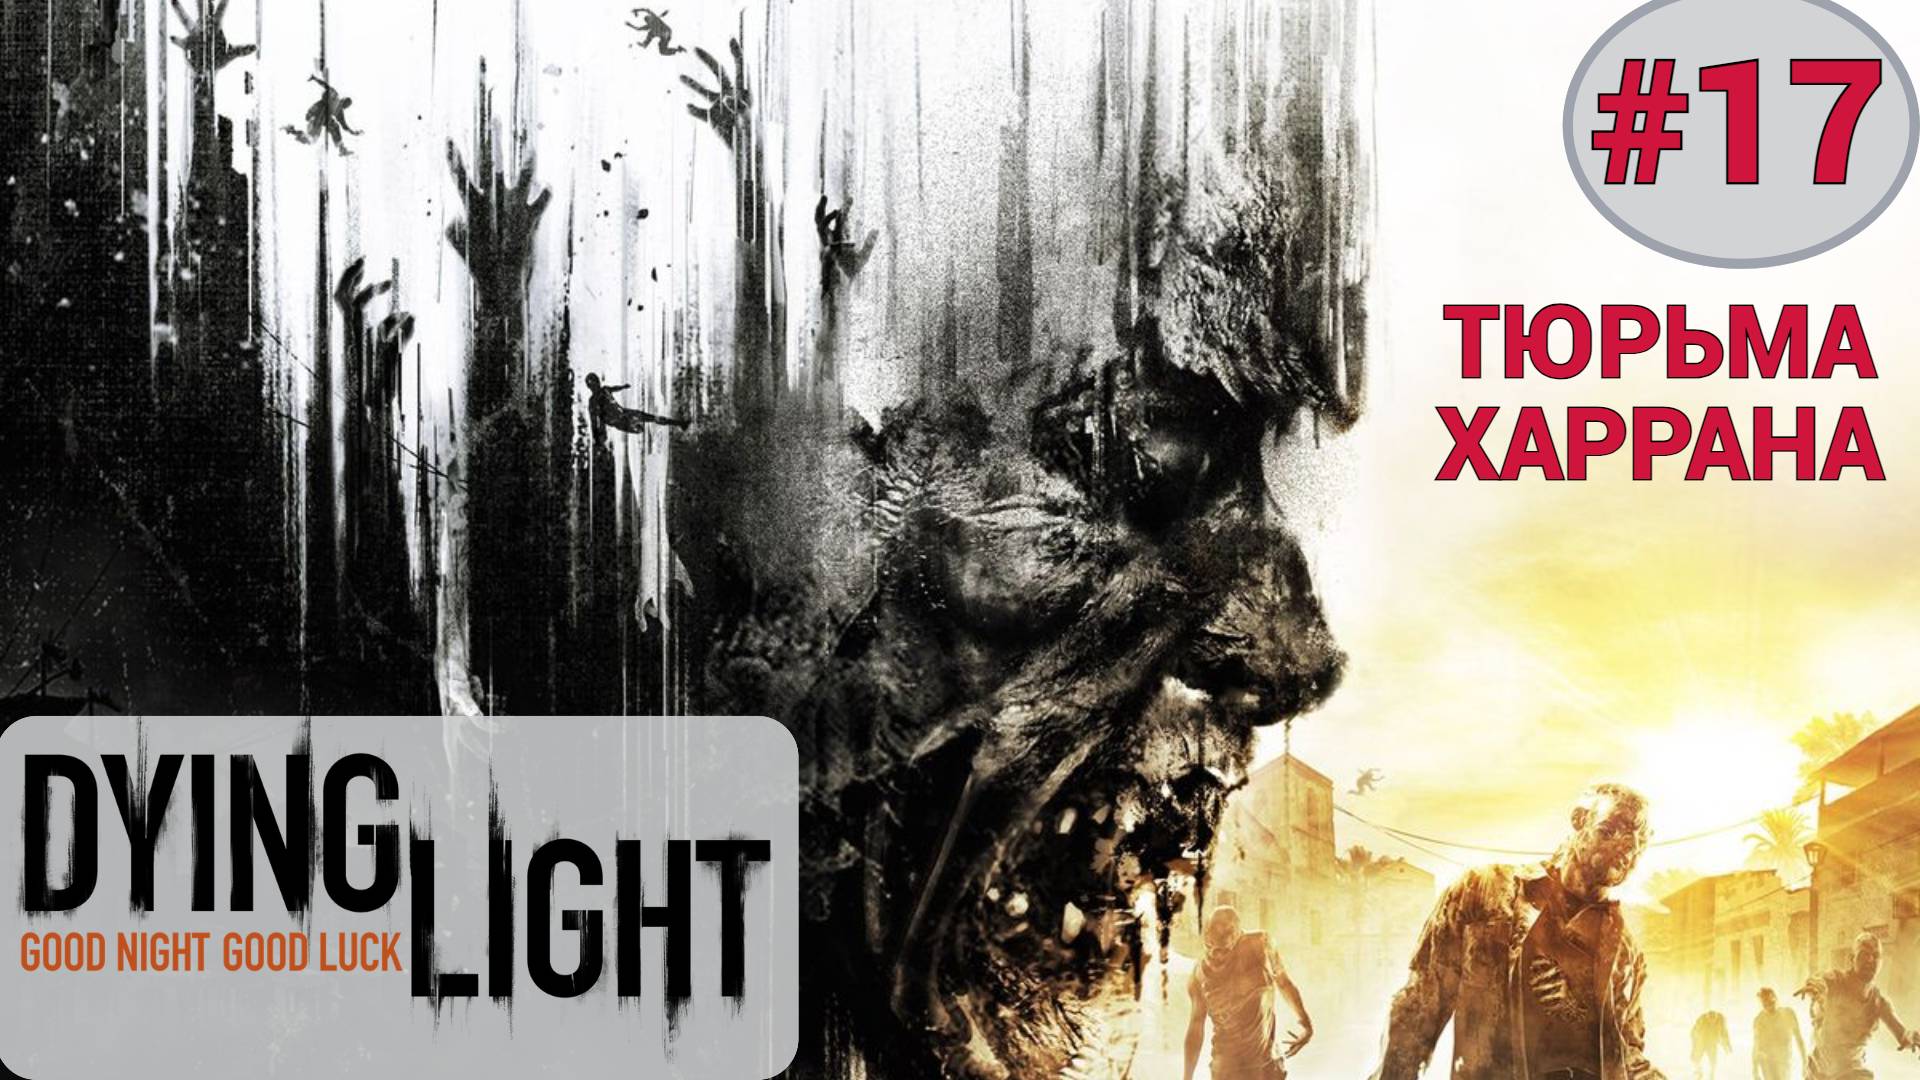 ? Прохождение Dying Light - DLC Тюрьма Харрана прохождение | Дайн Лайт ДЛС